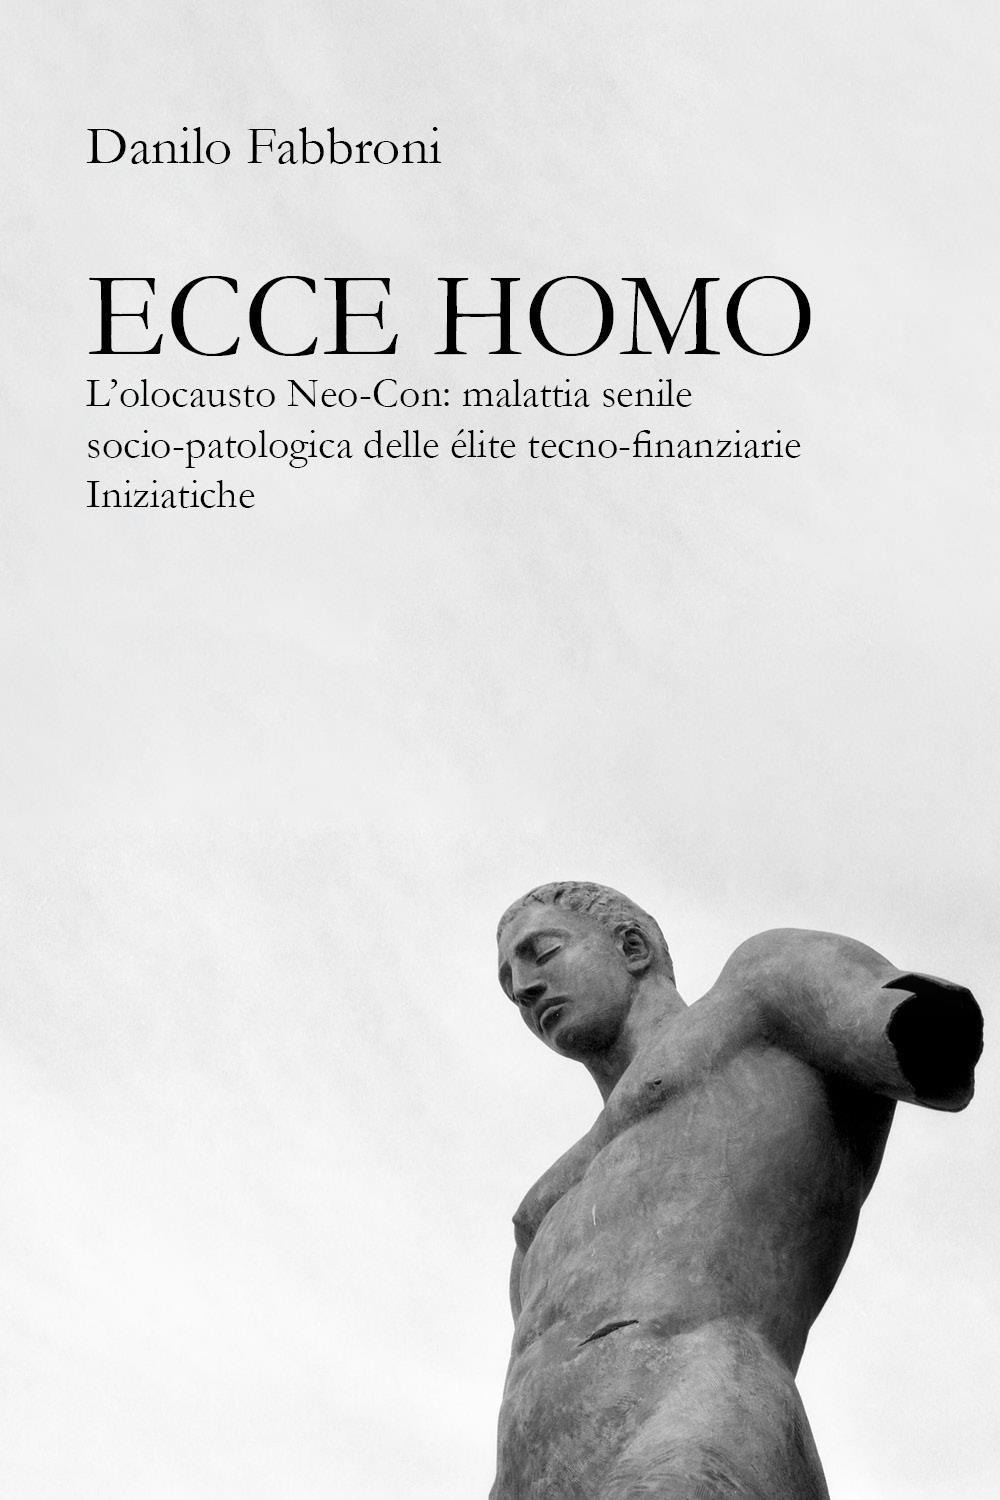 Ecce homo. L'olocausto Neo-Con: malattia senile socio-patologica delle élite tecno-finanziarie iniziatiche